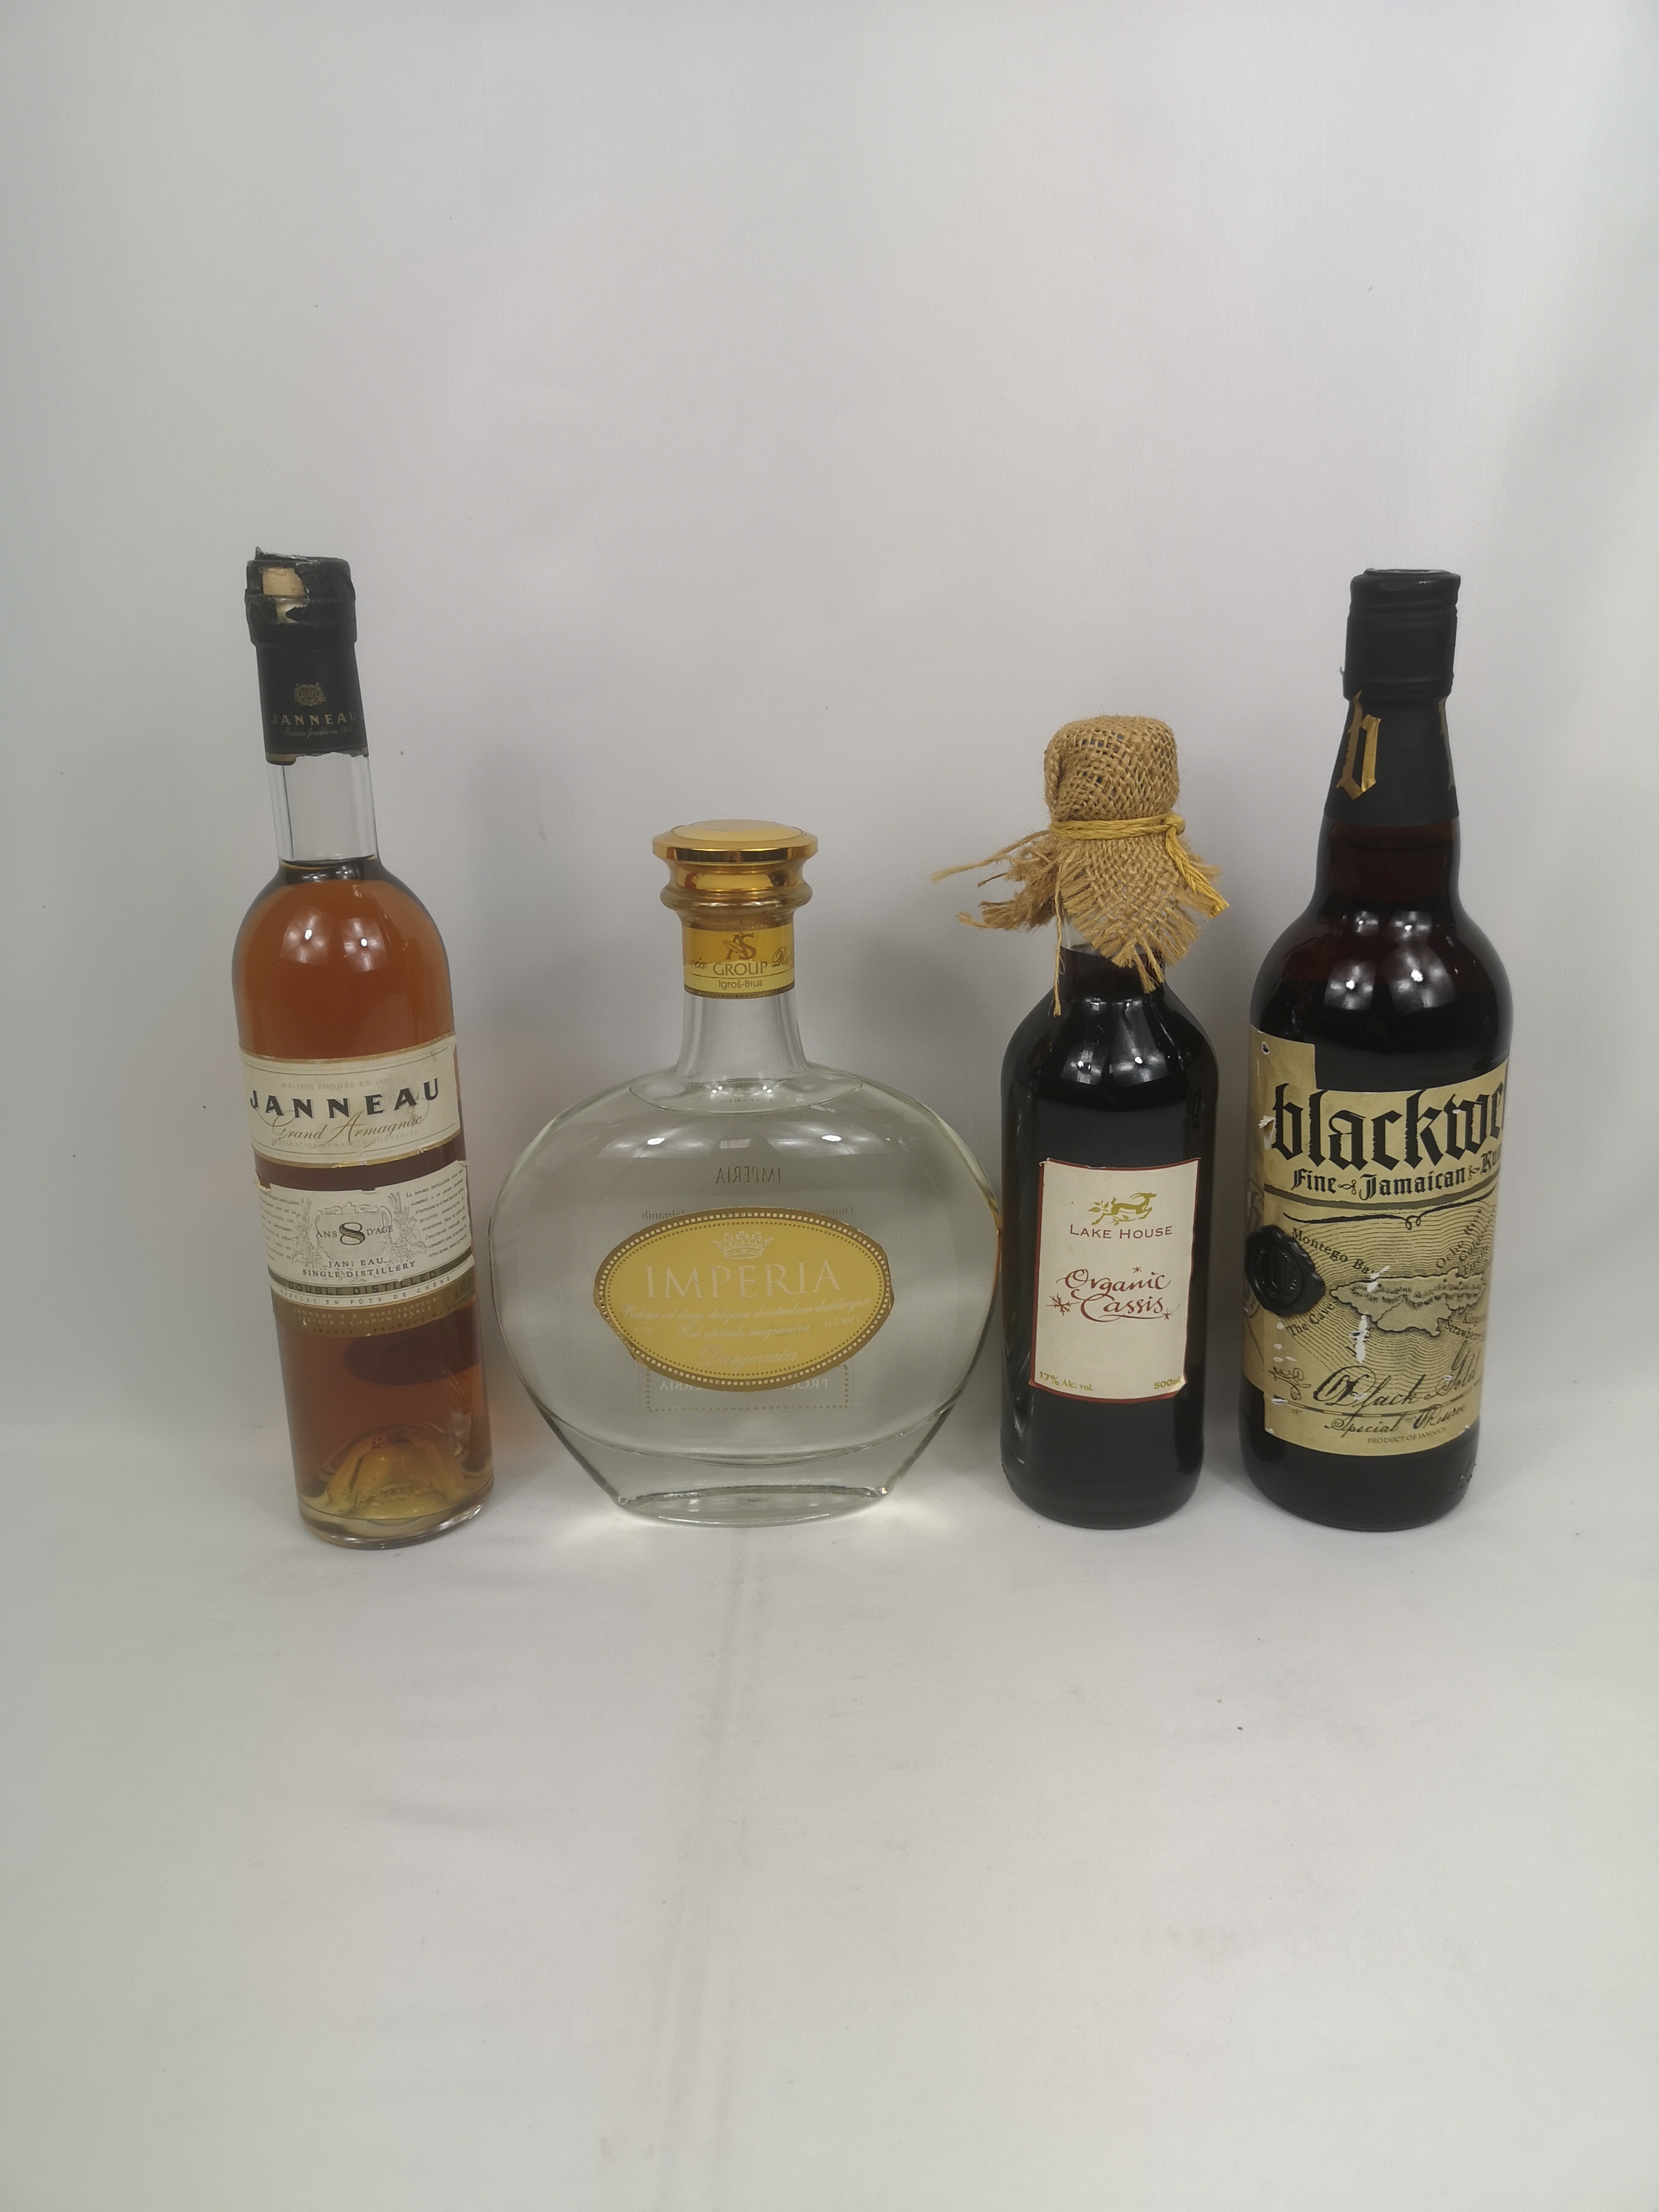 Four bottles of spirits